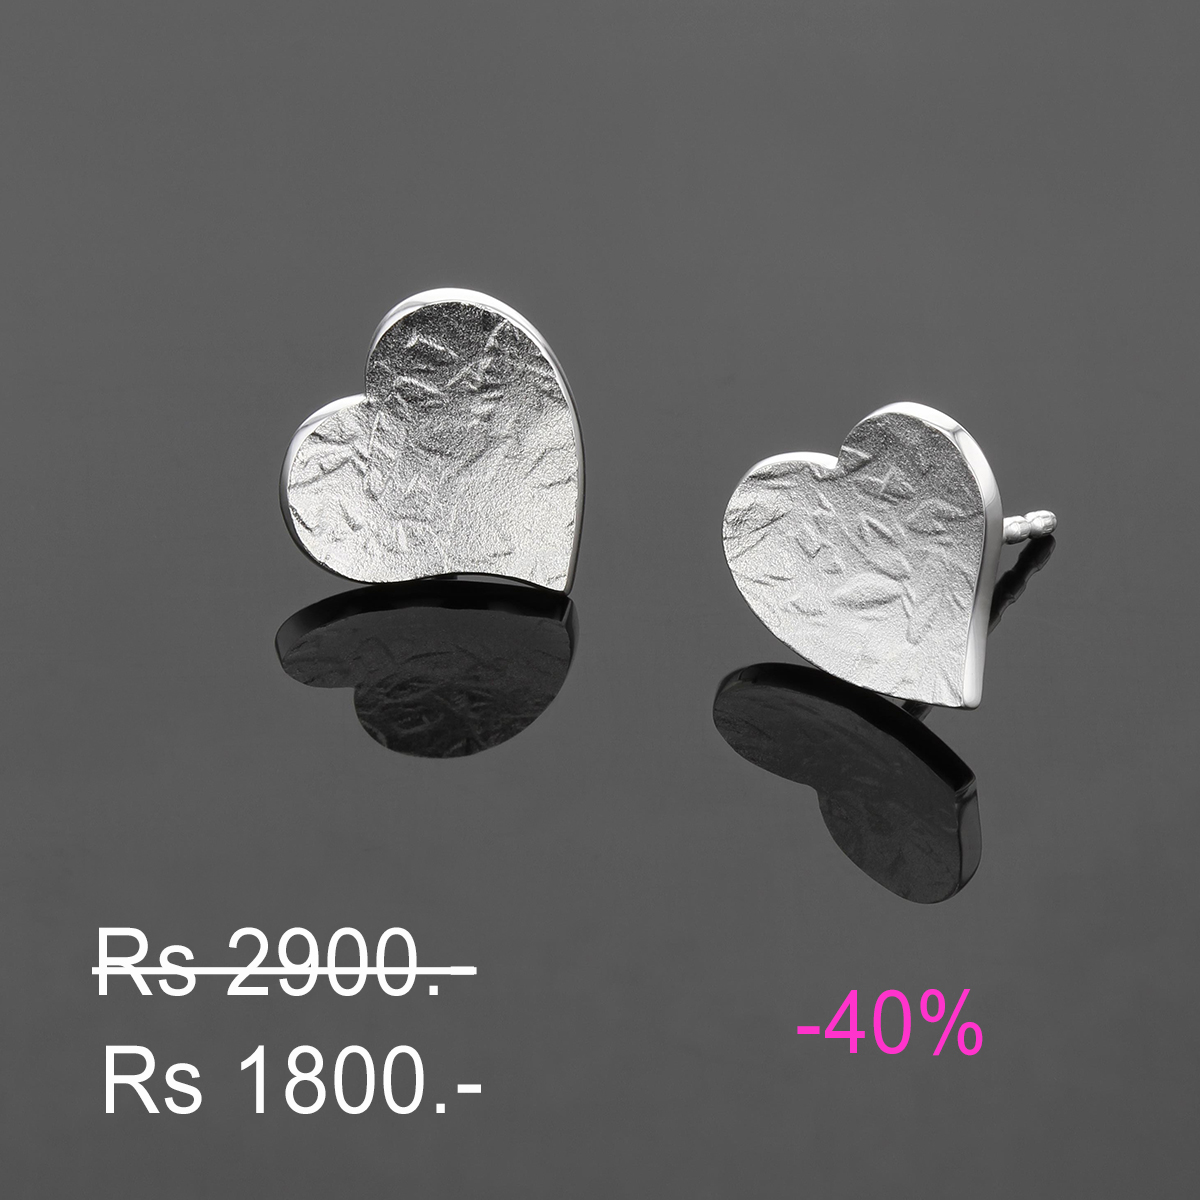 Textured heart earrings in silver